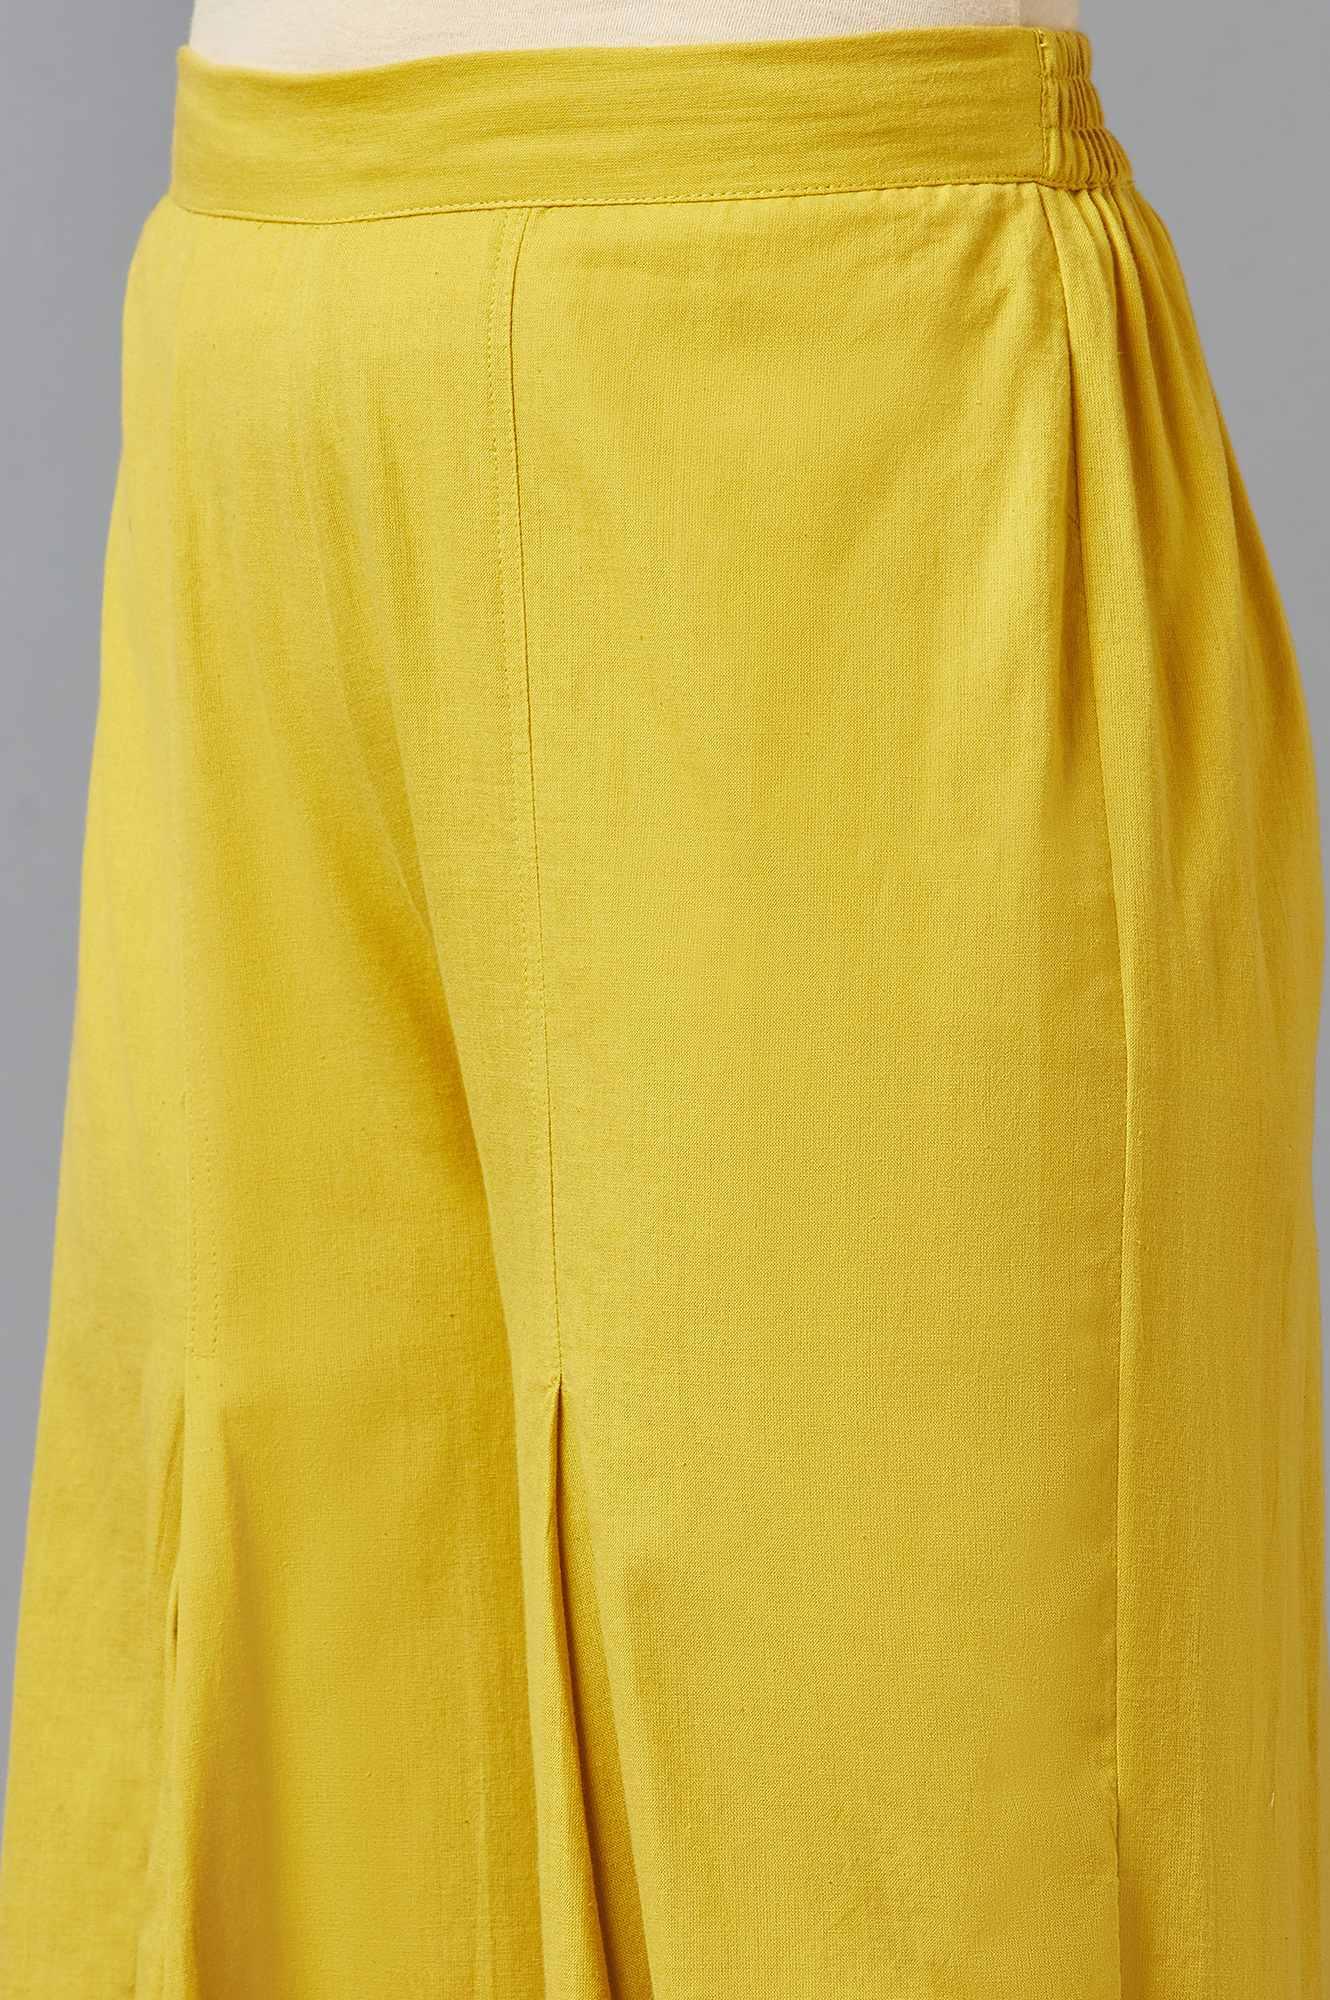 Yellow Cotton Flax Dapped Parallel Pants - wforwoman